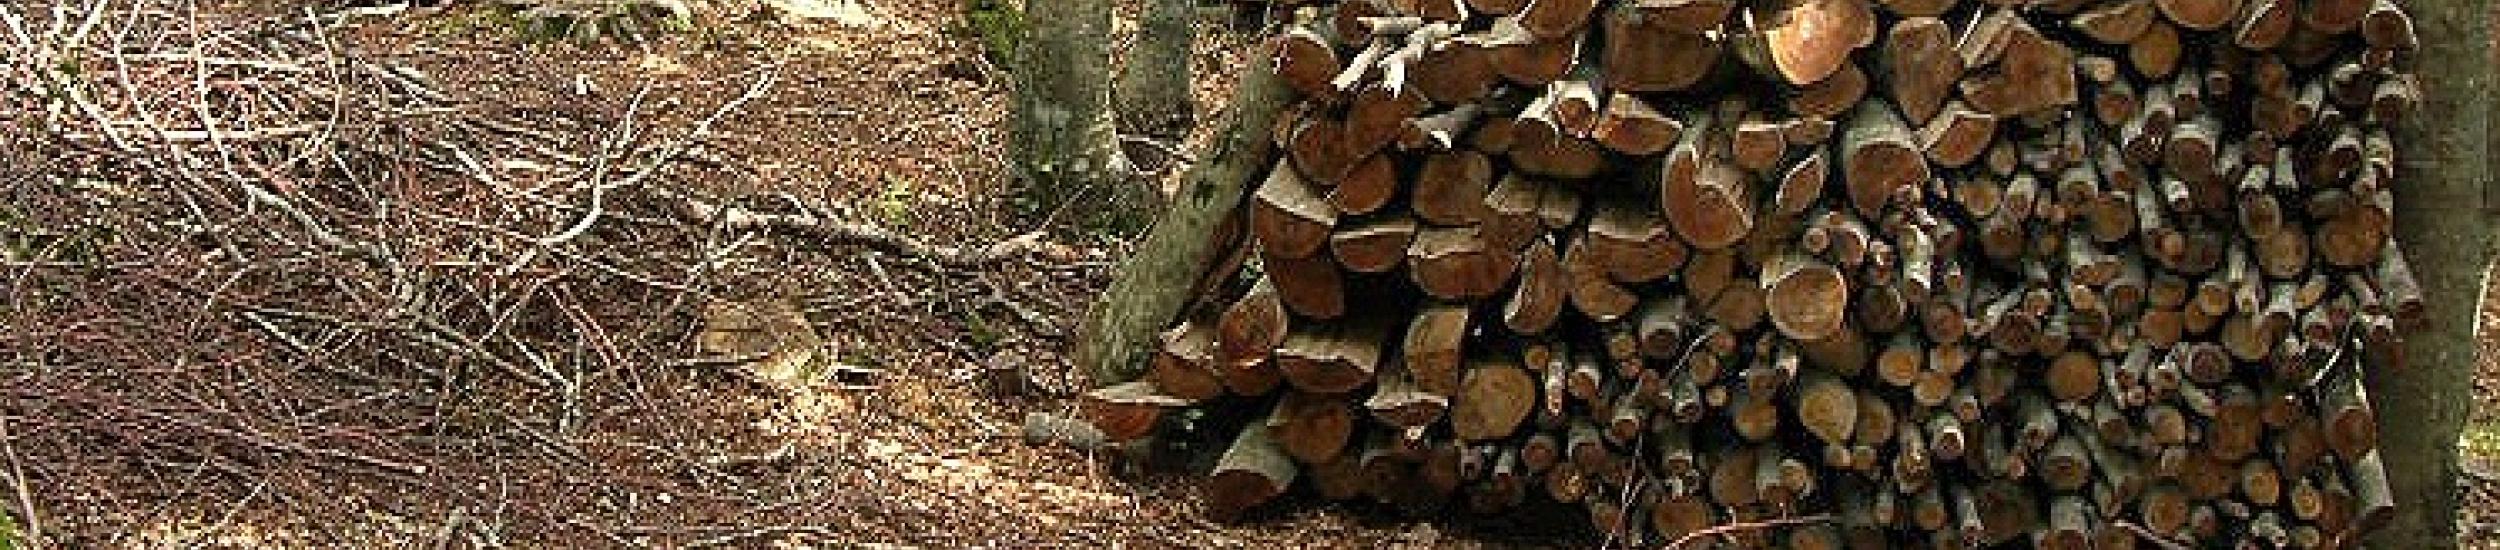 News: Campo ligure, senso unico alternato sulla sp 456 del turchino per taglio alberi